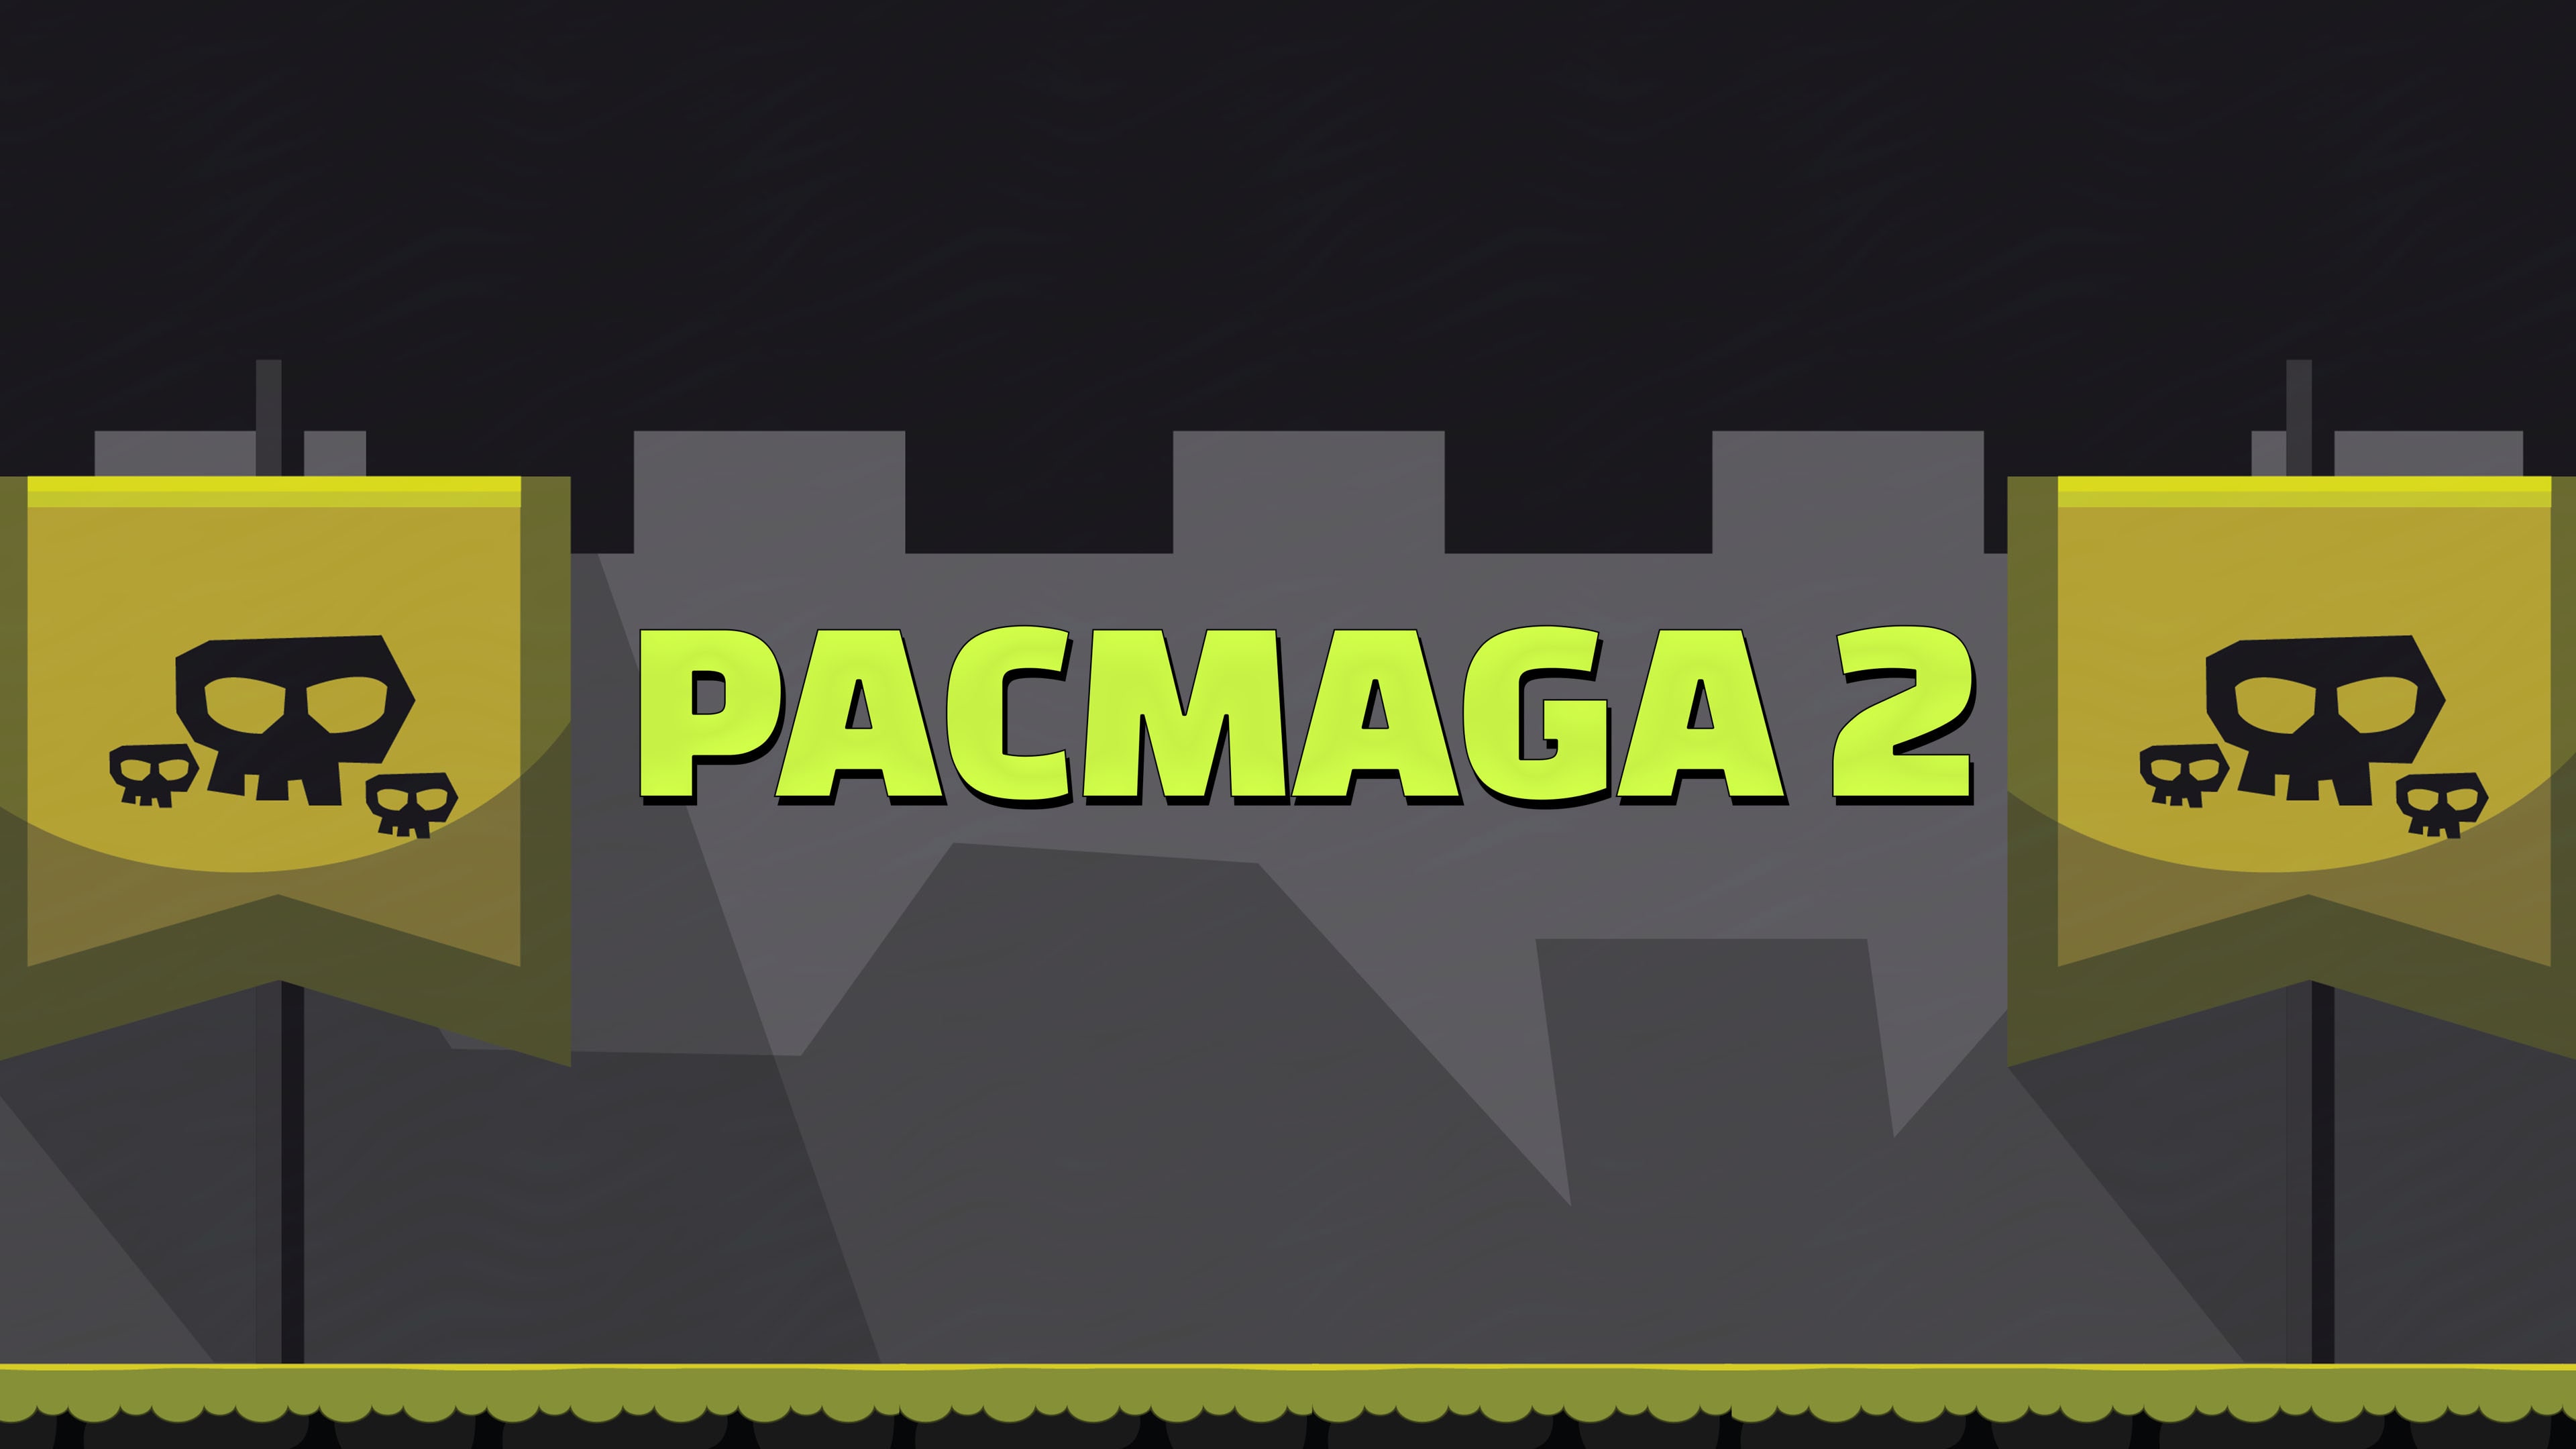 Pacmaga 2